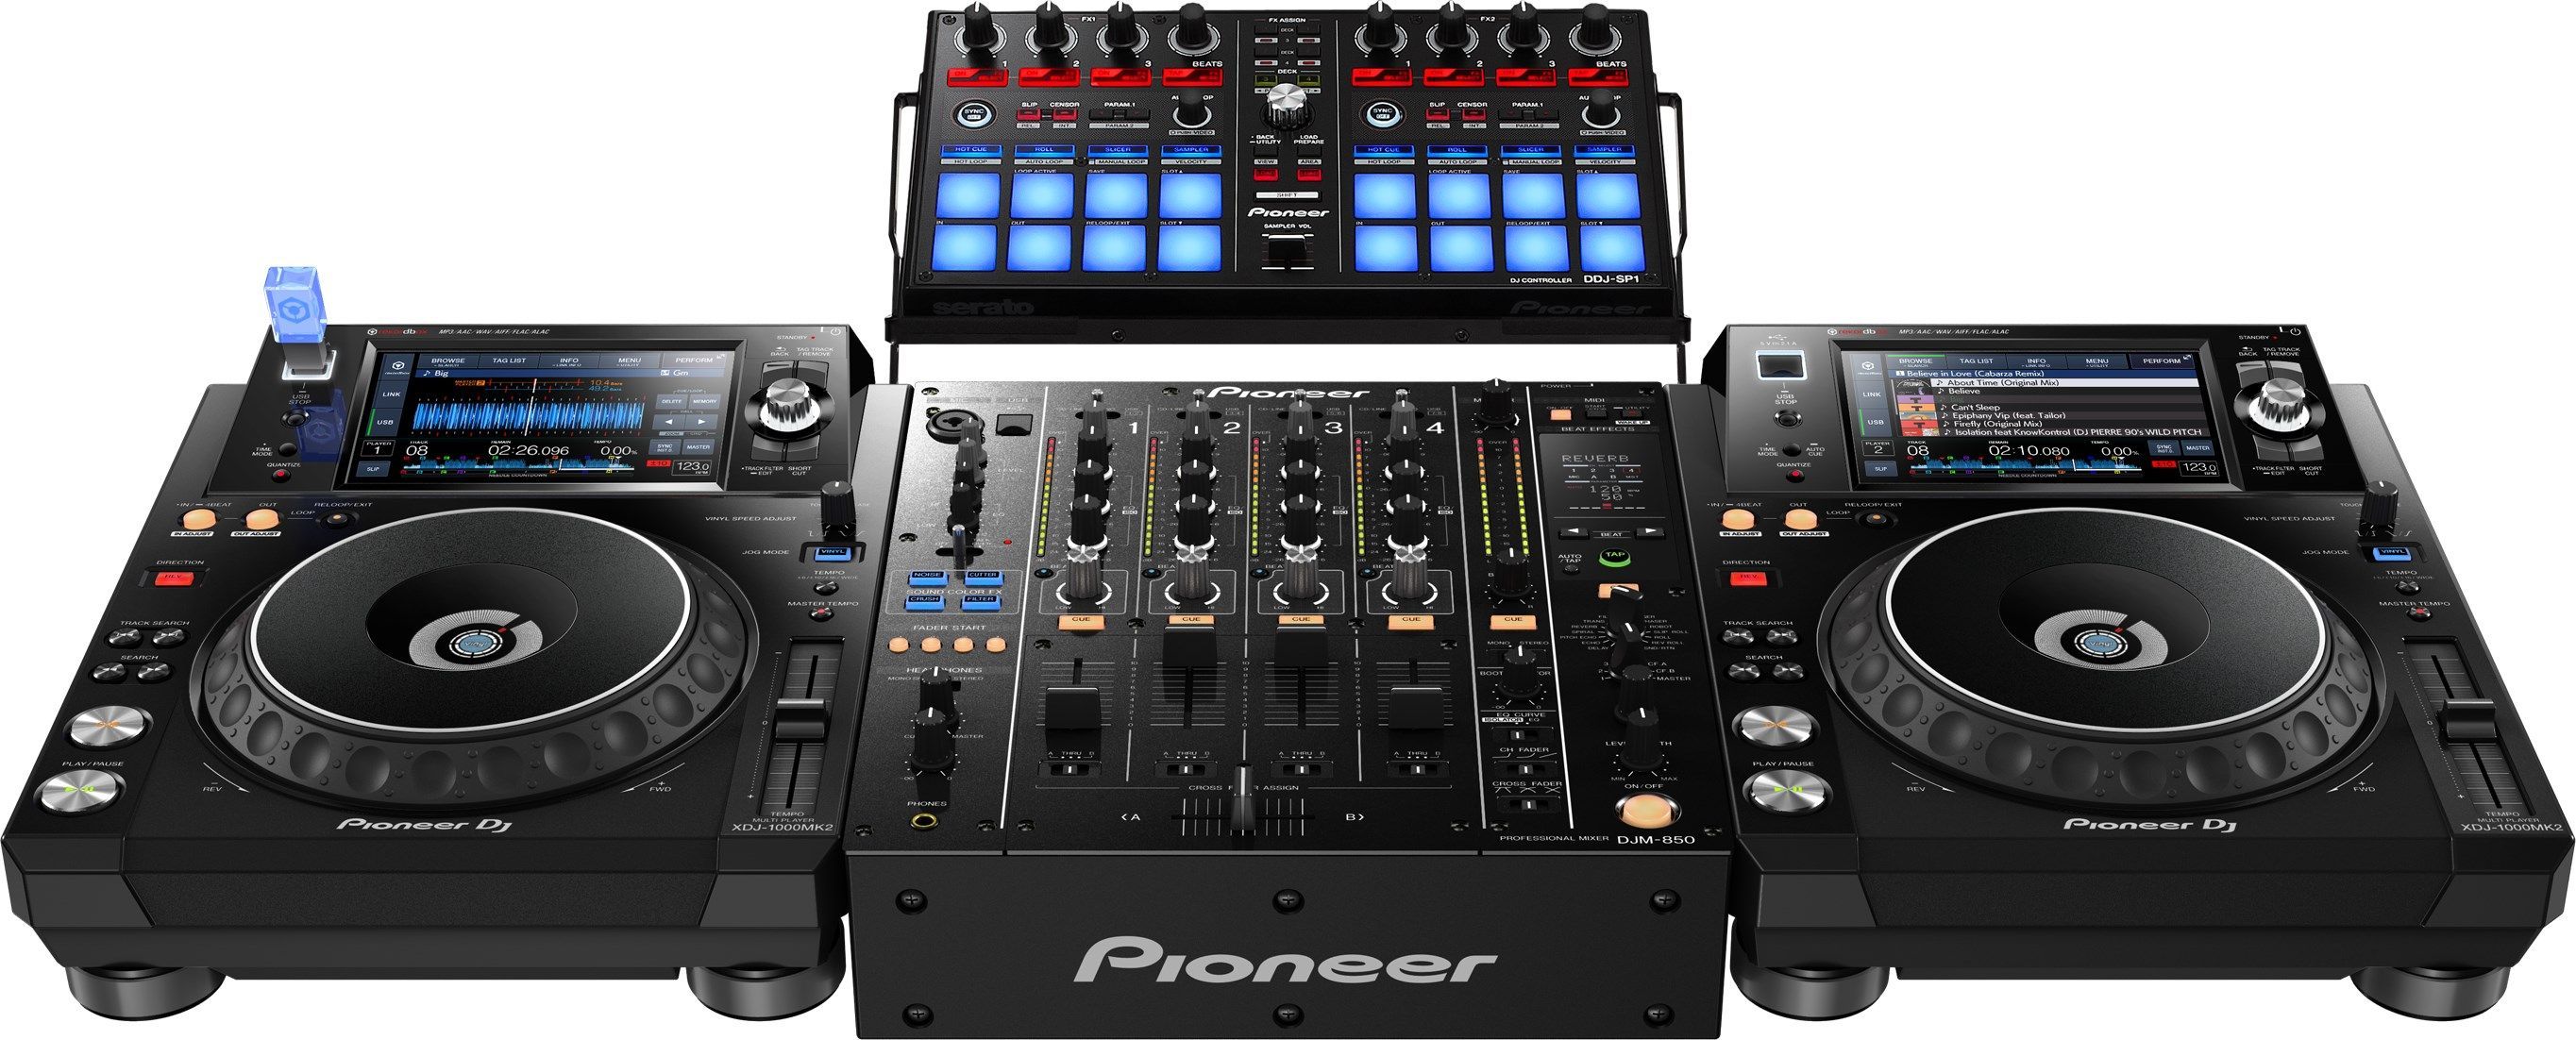 Flac 1000. Pioneer DJM-750mk2. Pioneer mk1000. DJ пульт Pioneer 1000. CDJ 1000 mk2.